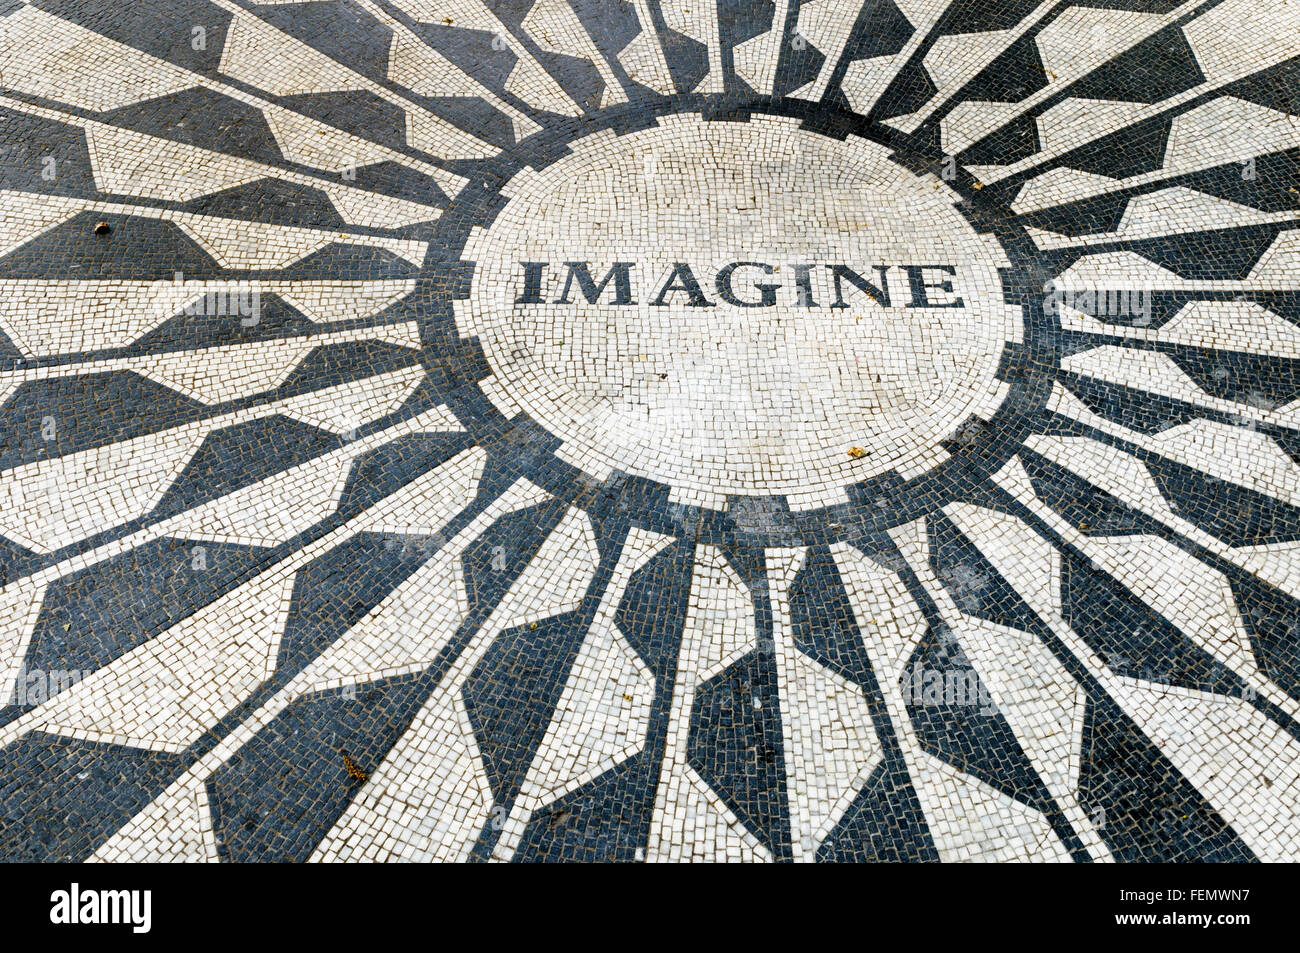 Dettaglio del 'IMAGINE' mosaico memorial a John Lennon, Strawberry Fields, al Central Park di New York City, Stati Uniti d'America Foto Stock